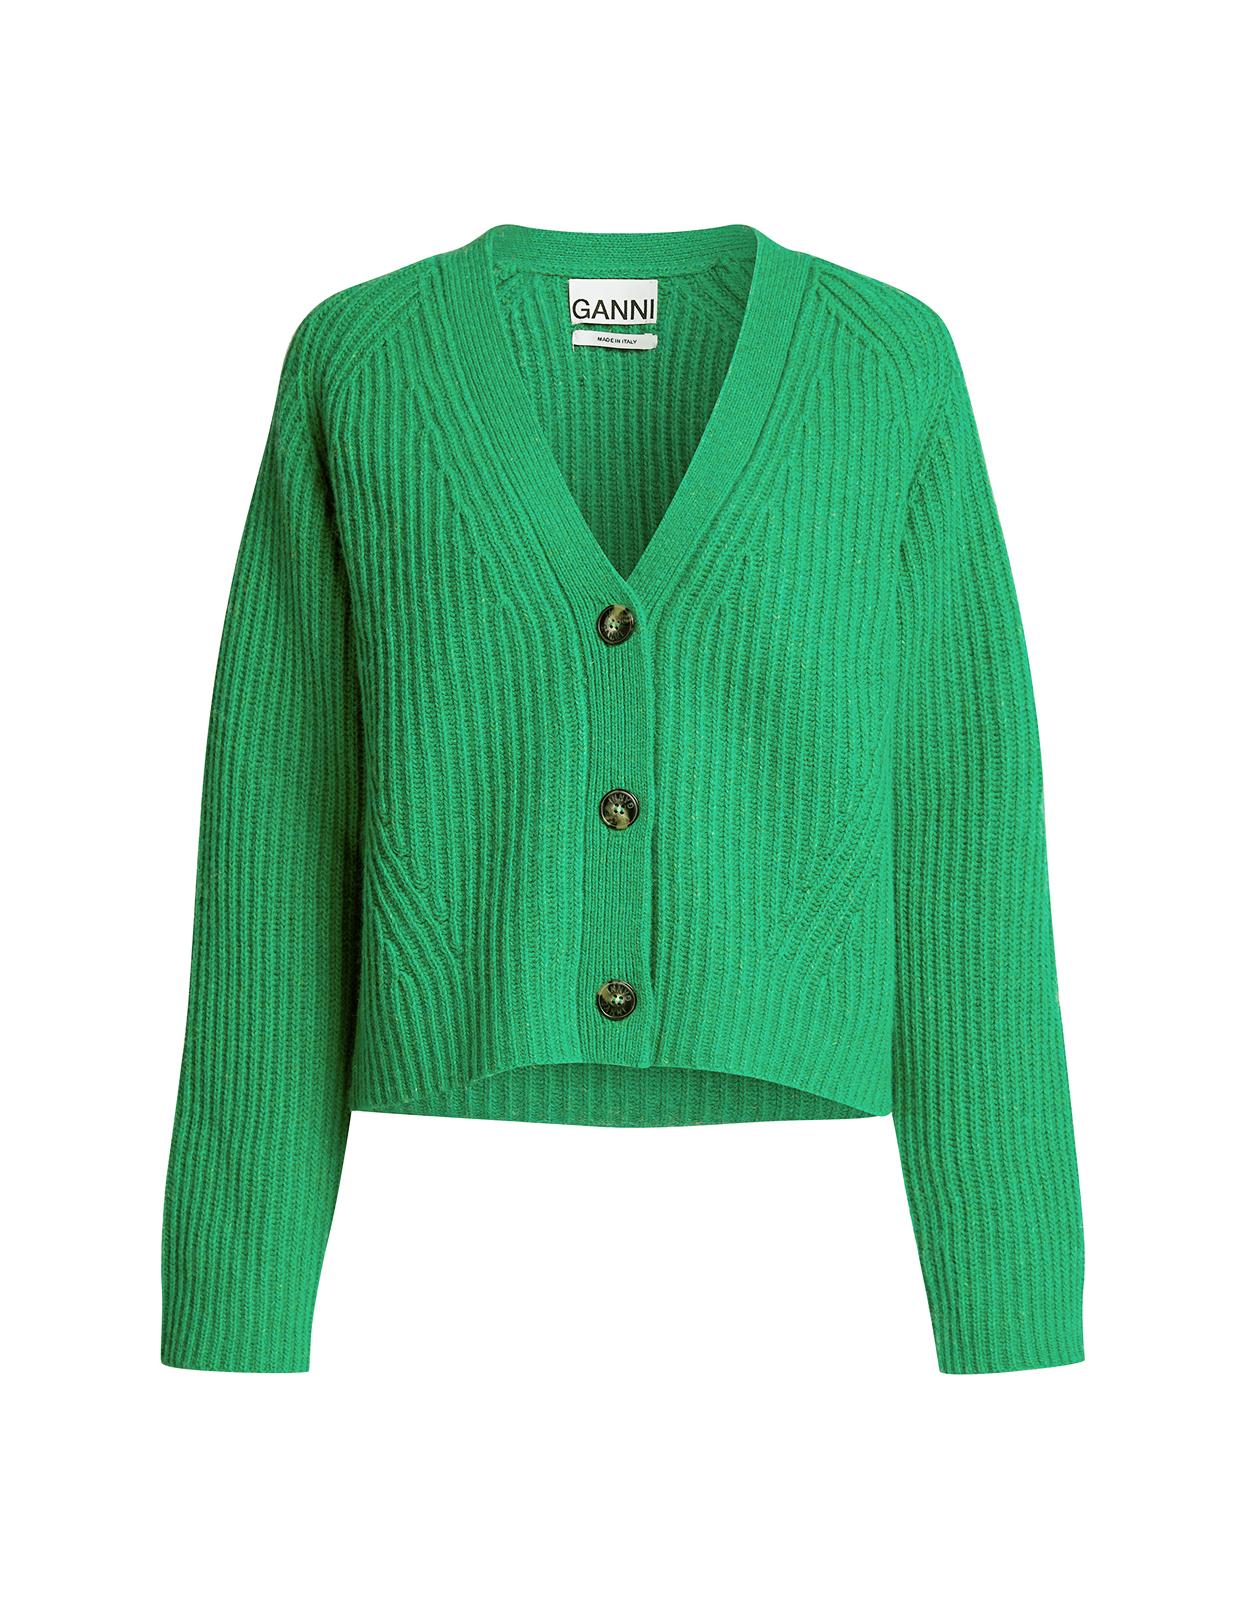 Ganni Recycled Wool Rib Knit Cardigan in Green - Lyst